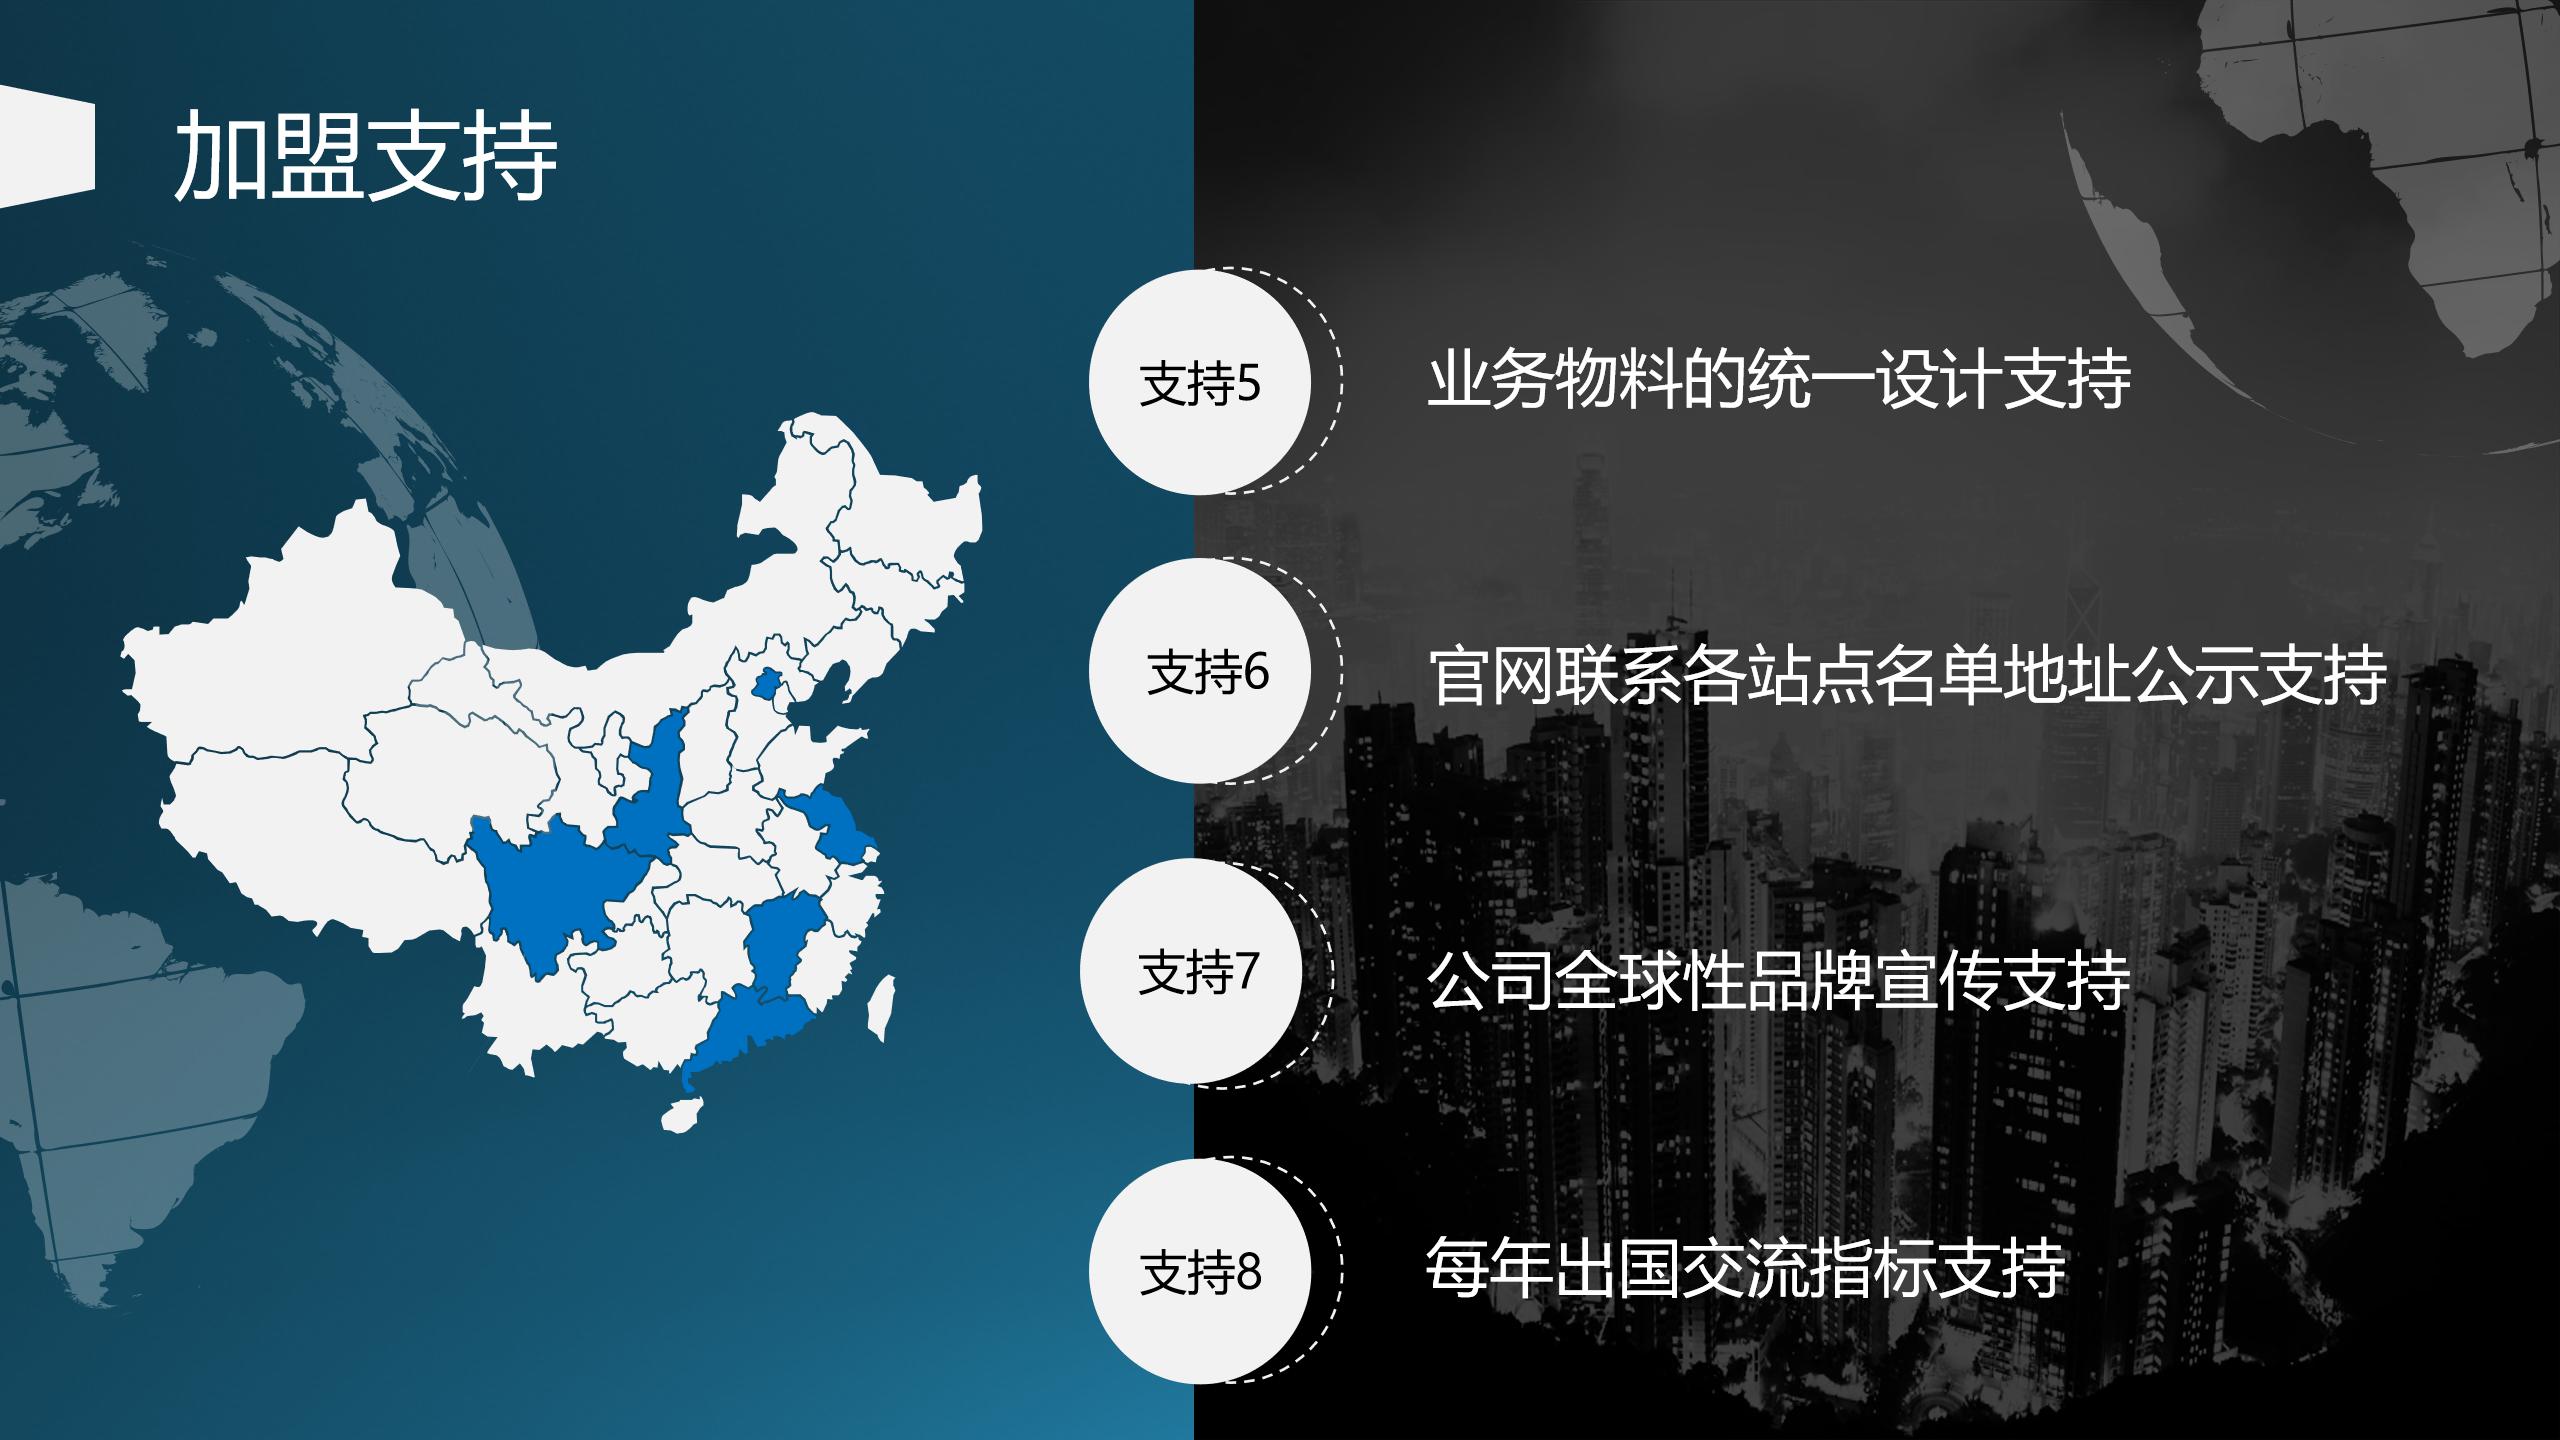 网站用上海博桥留学加盟说明 - 副本_11.jpg